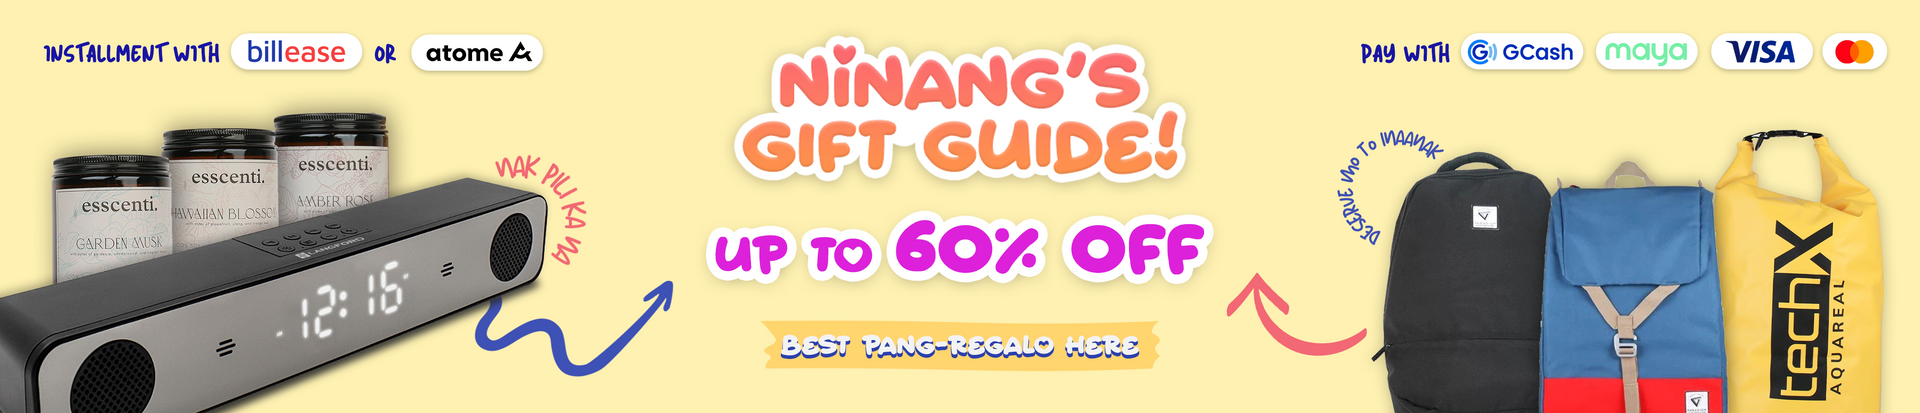 Ninang's Gift Guide!